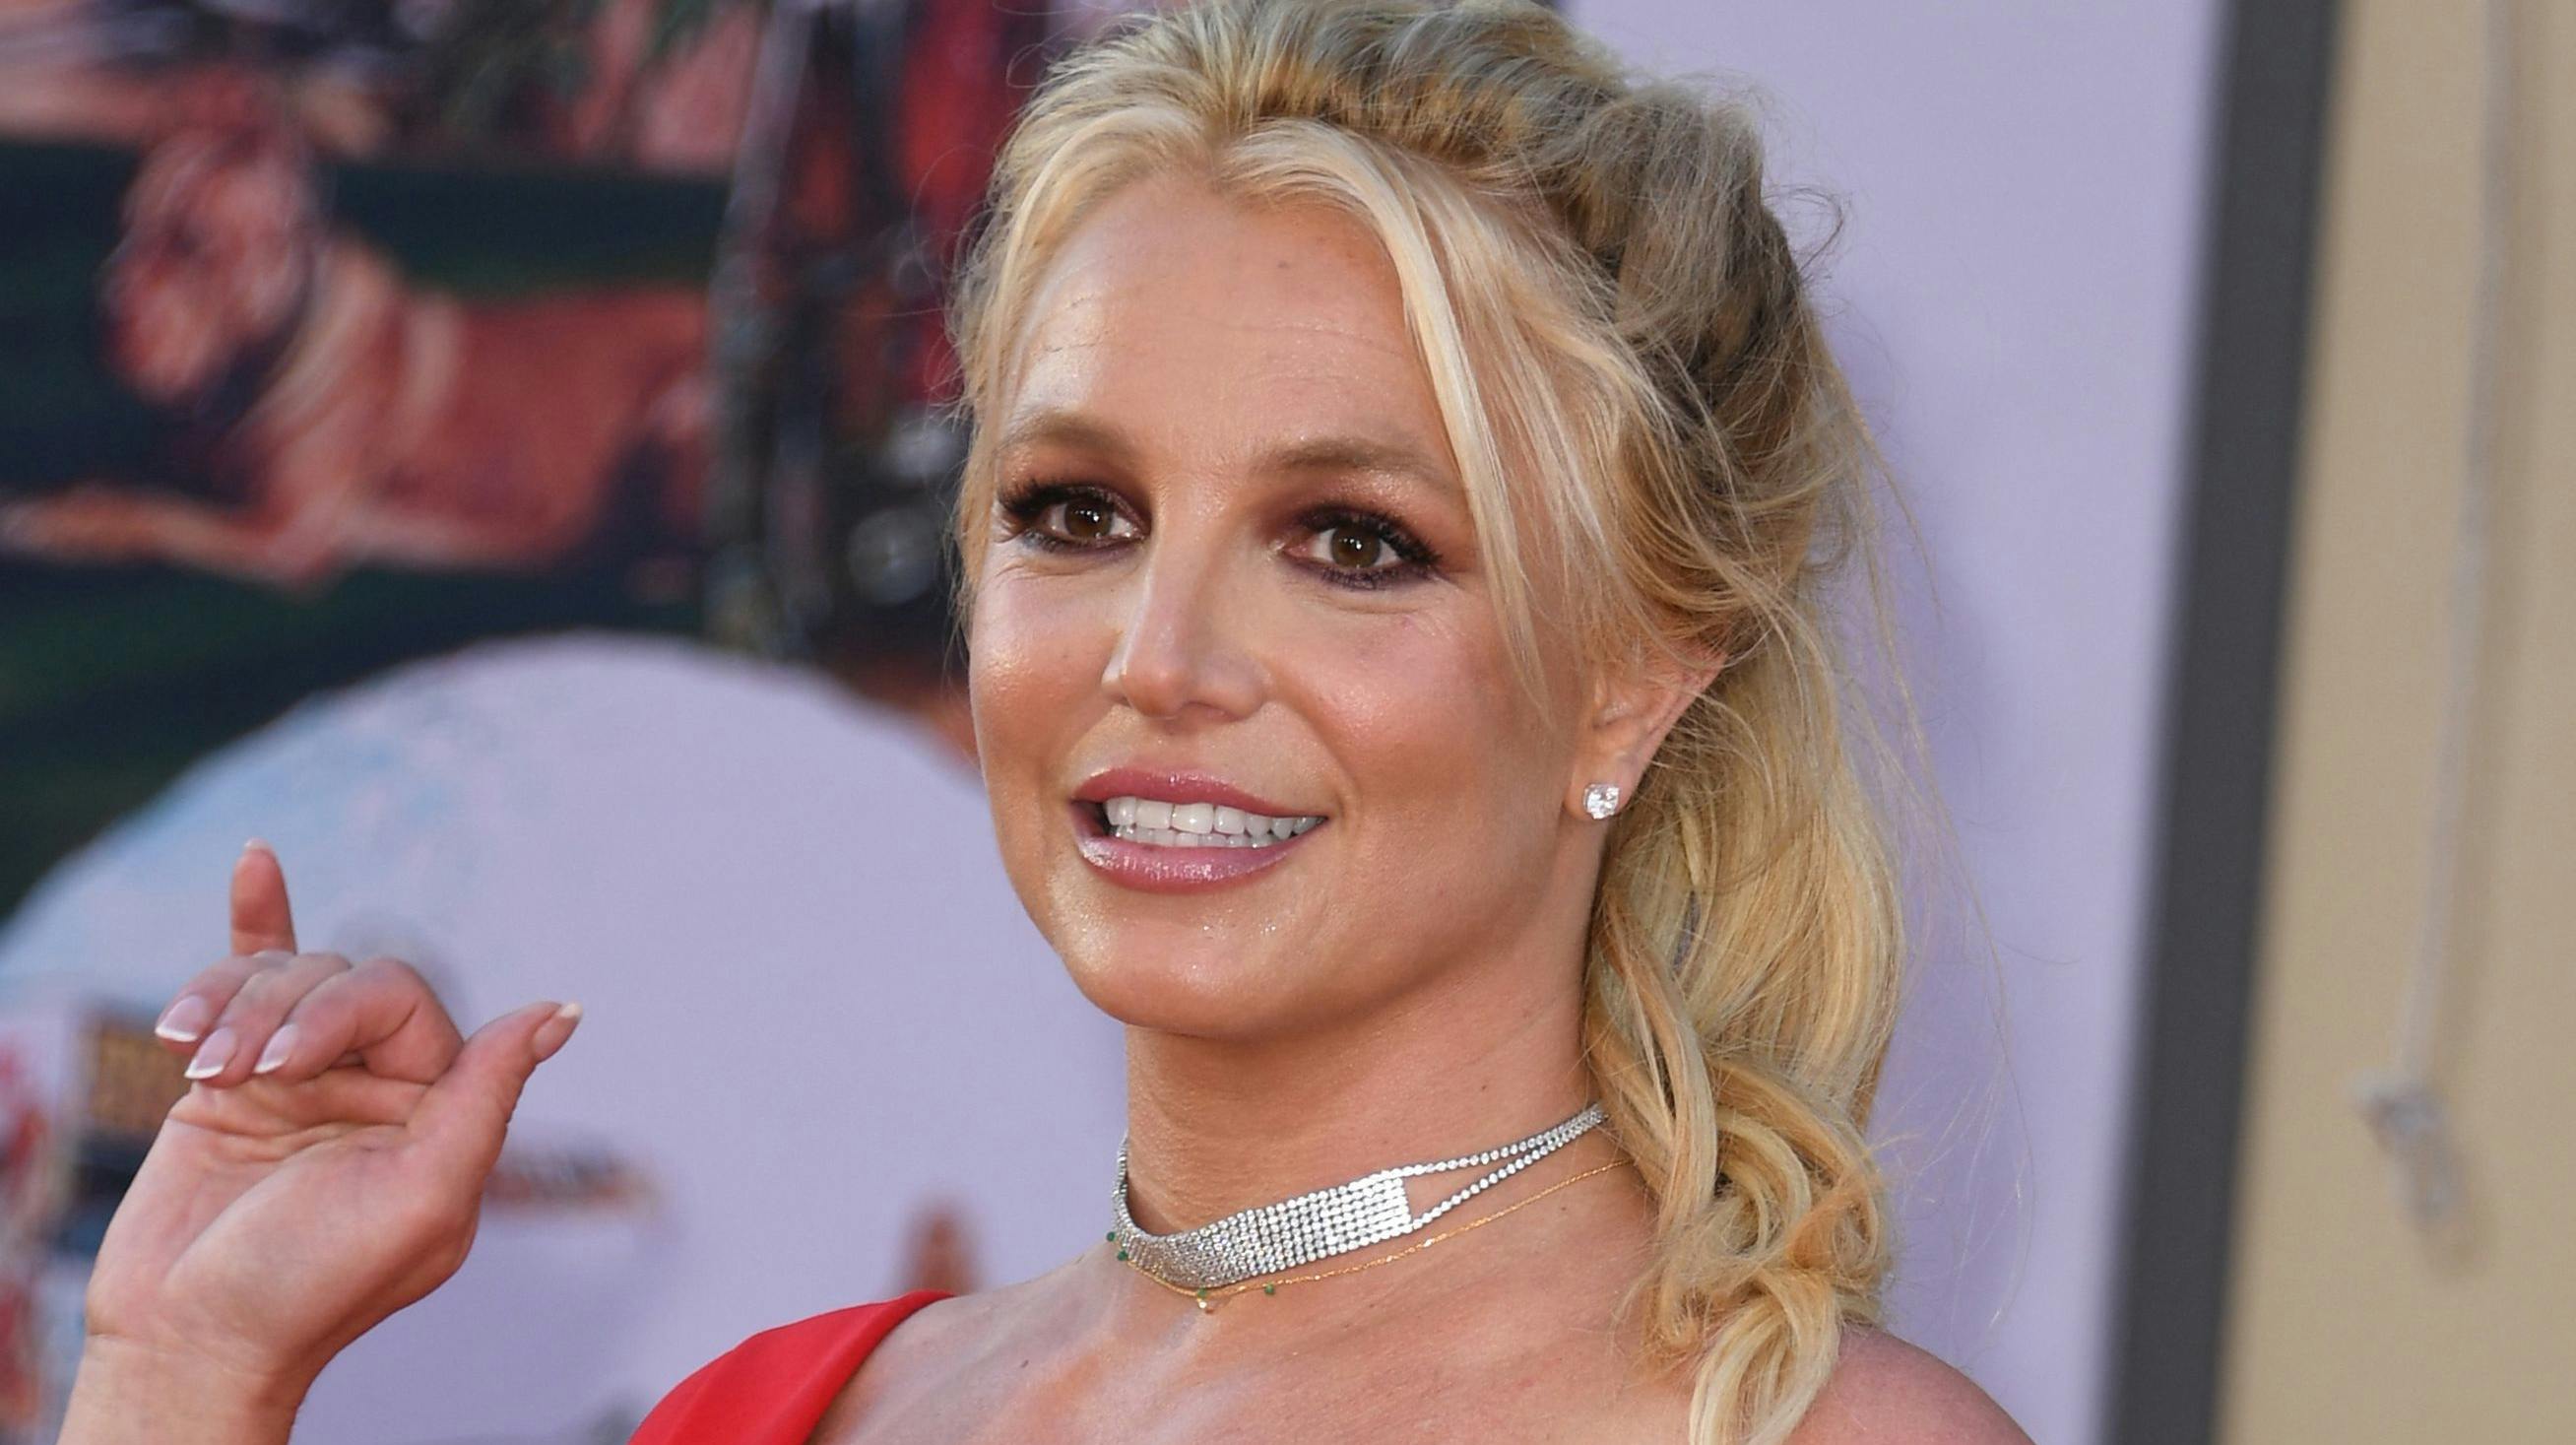 Selv om Britney Spears' bryllup i den grad emmede af eventyr, så gik tingene langt fra som planlagt.